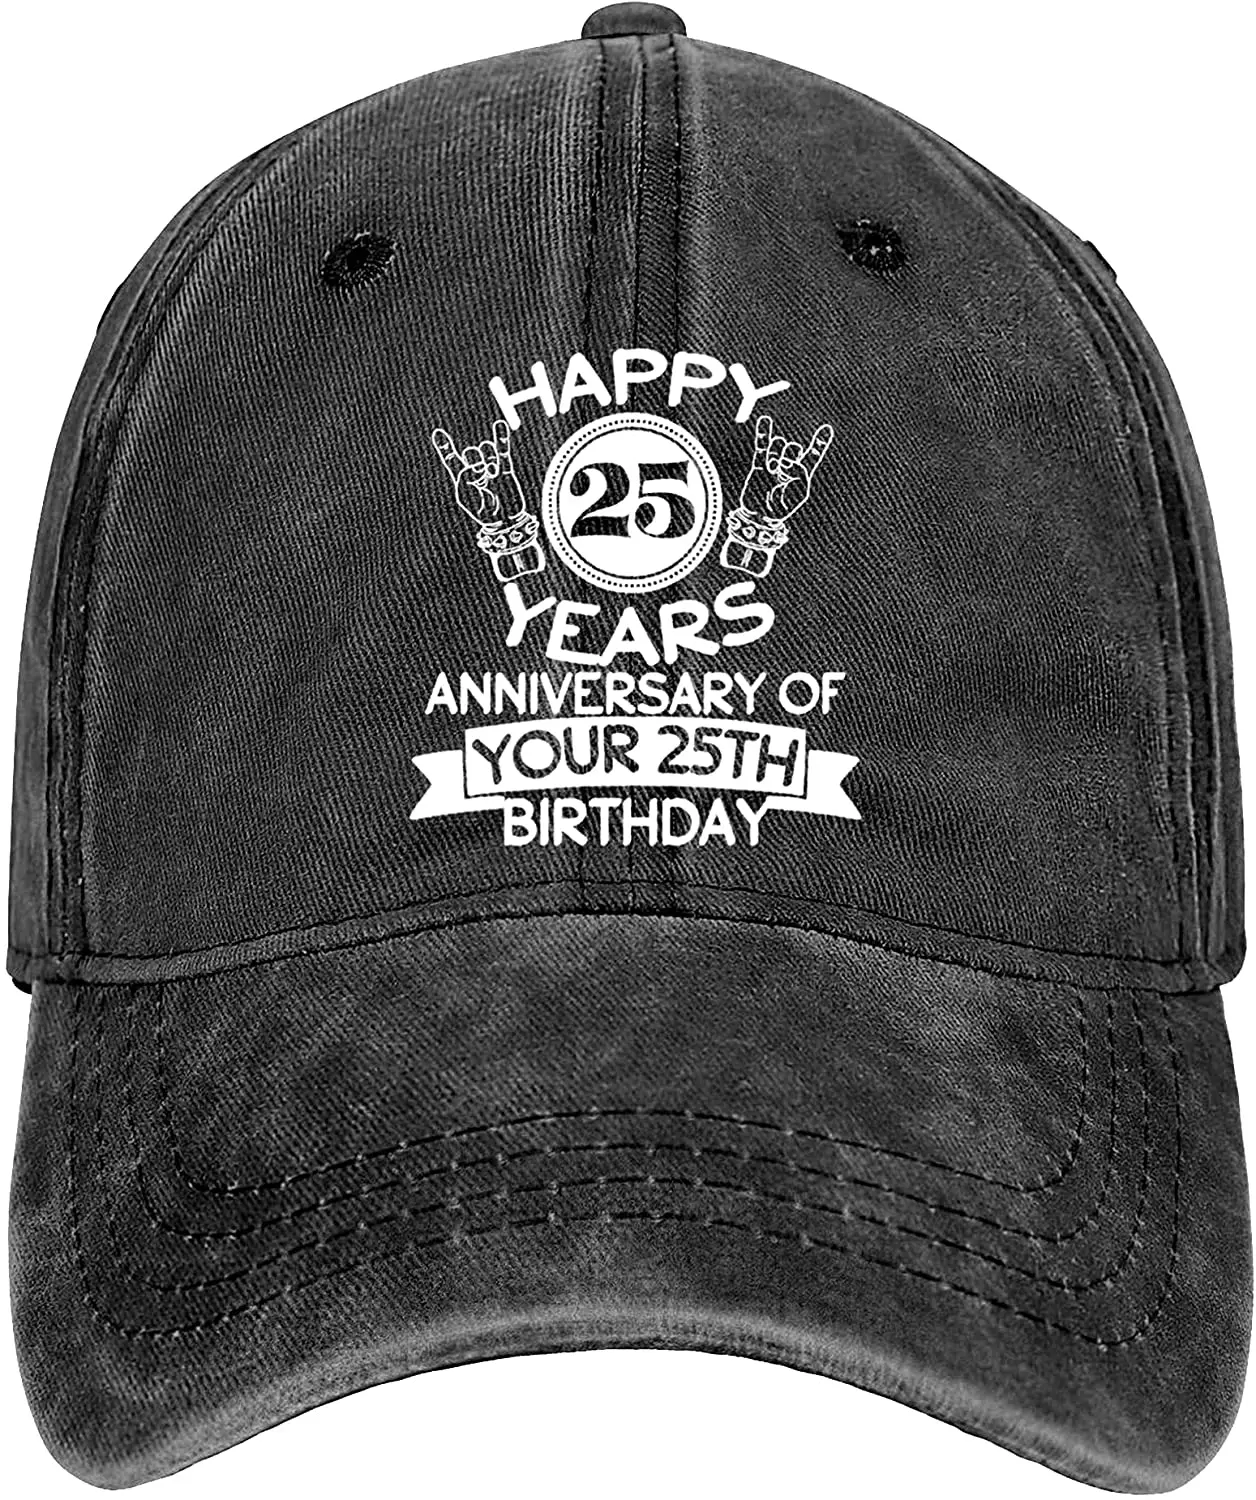 

Винтажная Кепка для мужчин и женщин, регулируемая потертая шапка в стиле 50-го дня рождения, для молодых людей